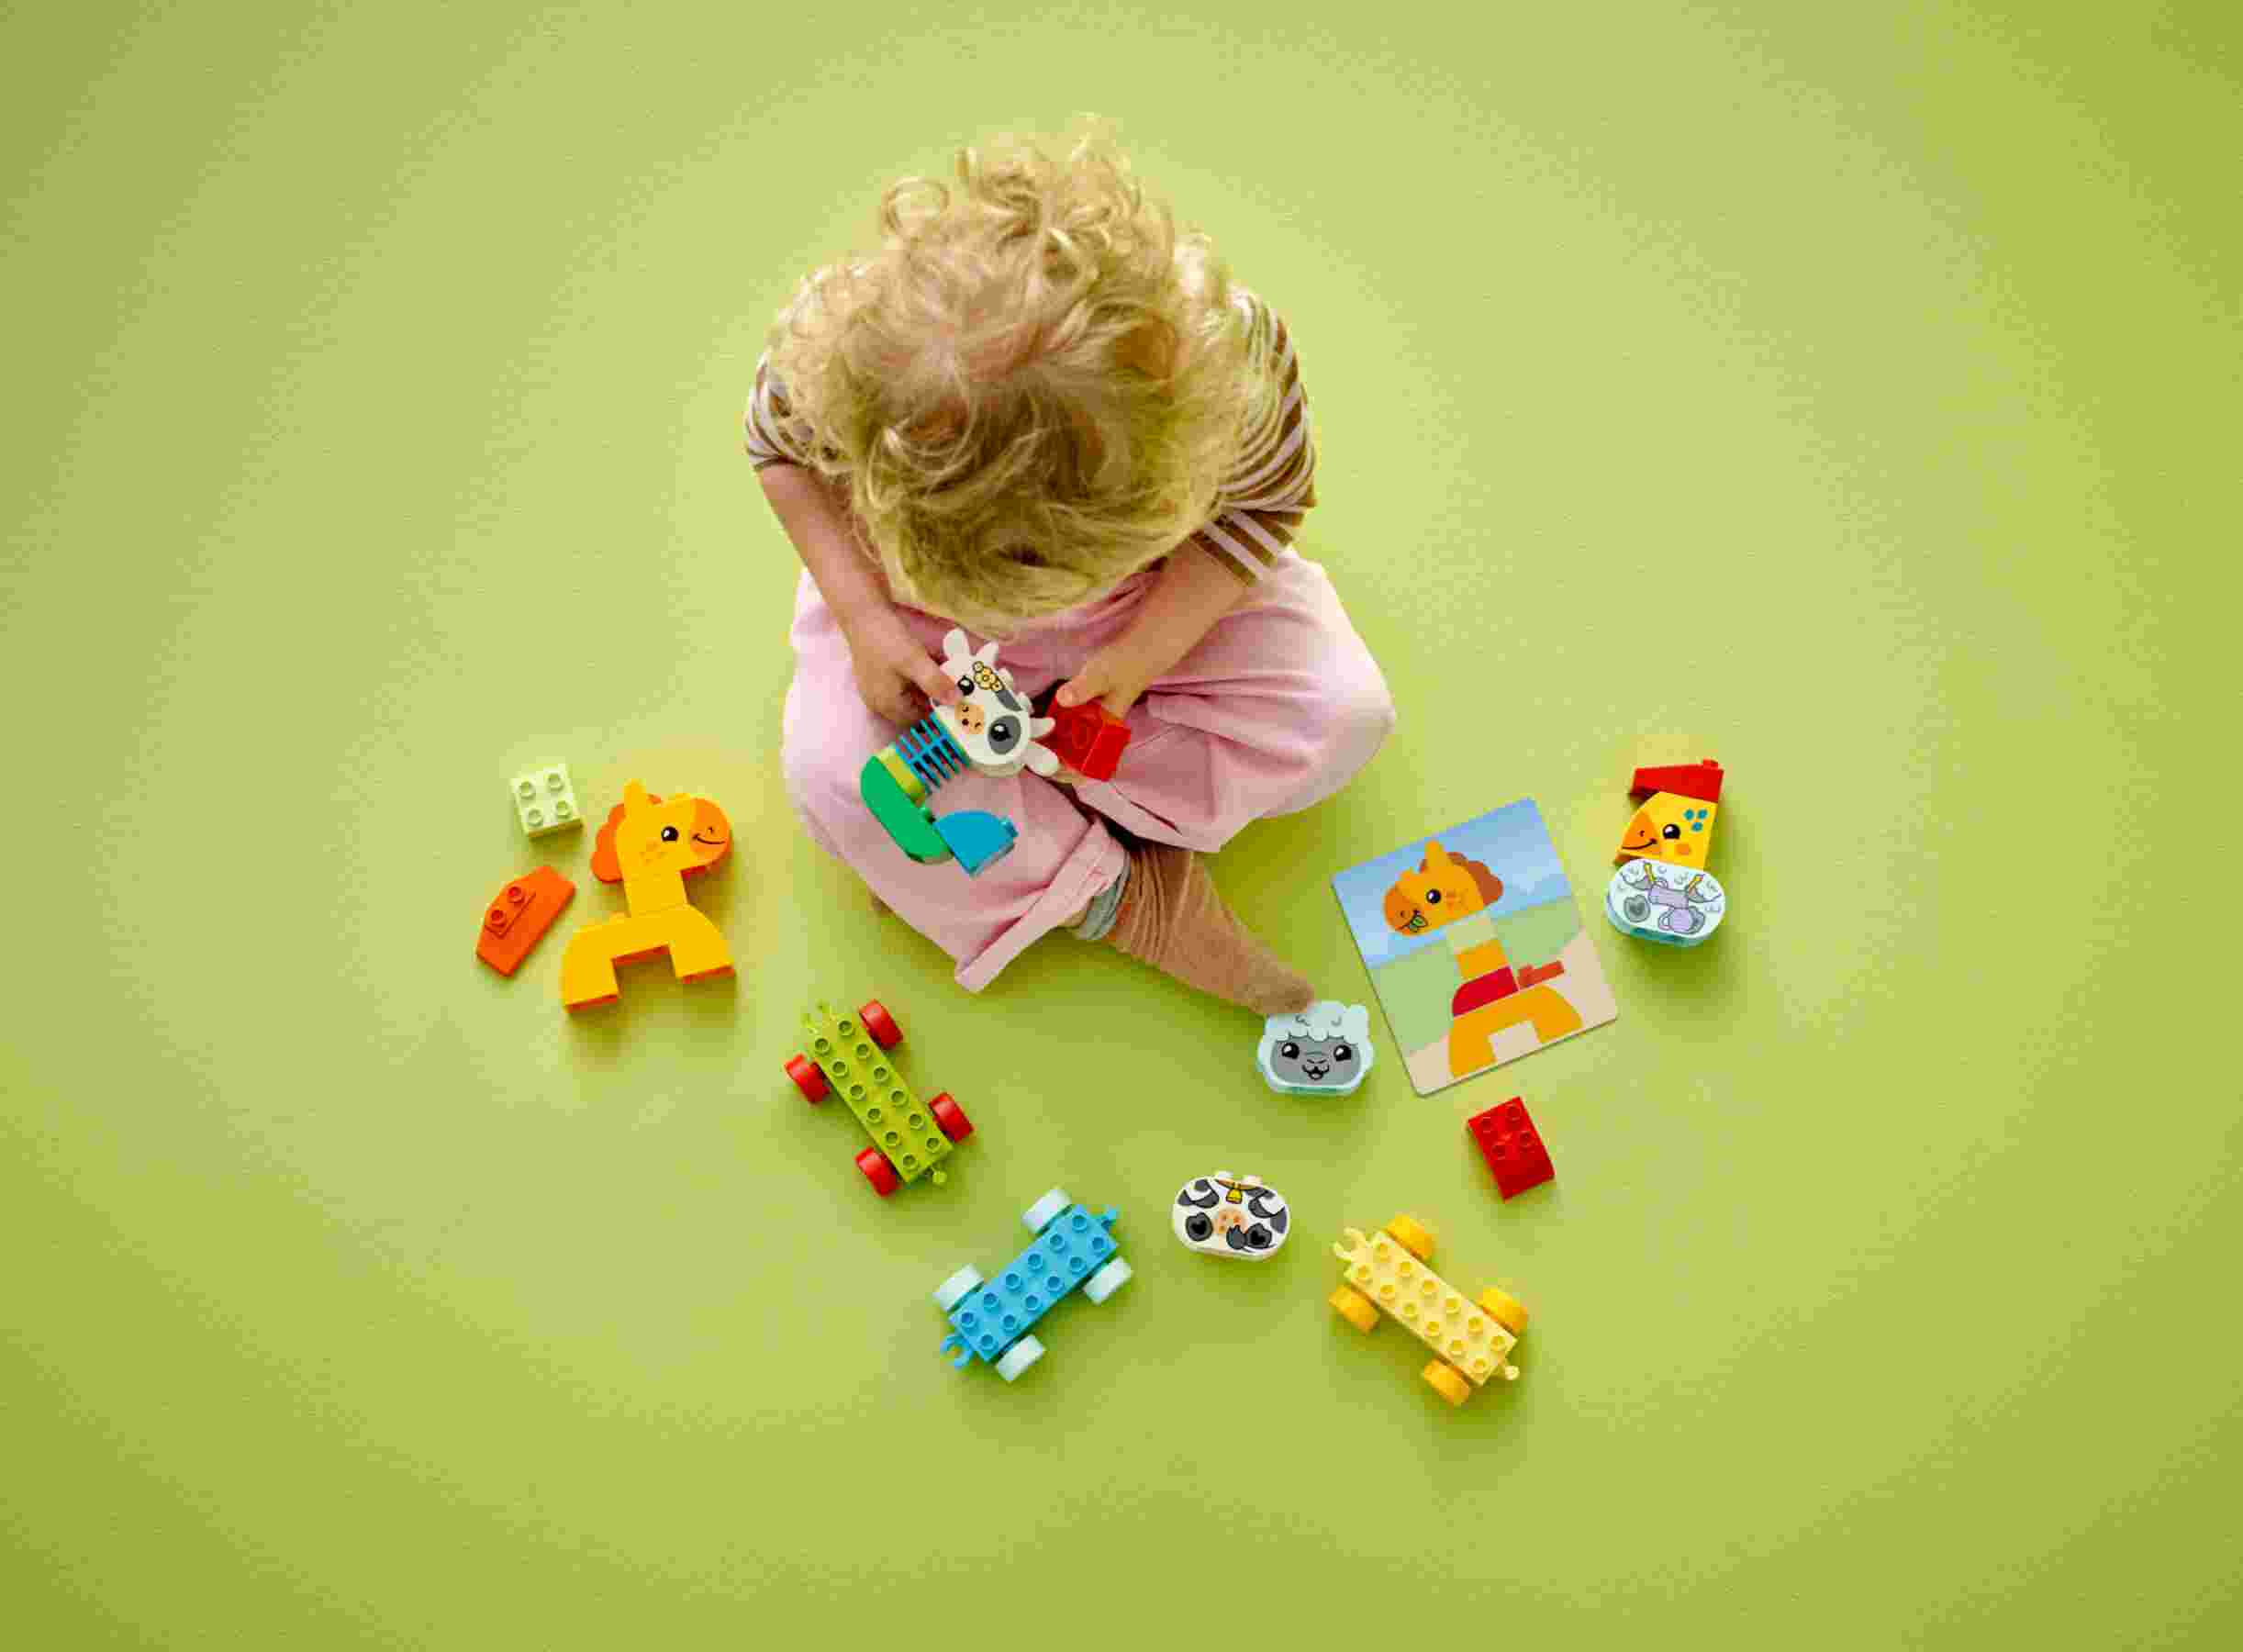 LEGO 10412 DUPLO Tierzug, 4 Spielzeugtiere, farblich passende Waggons